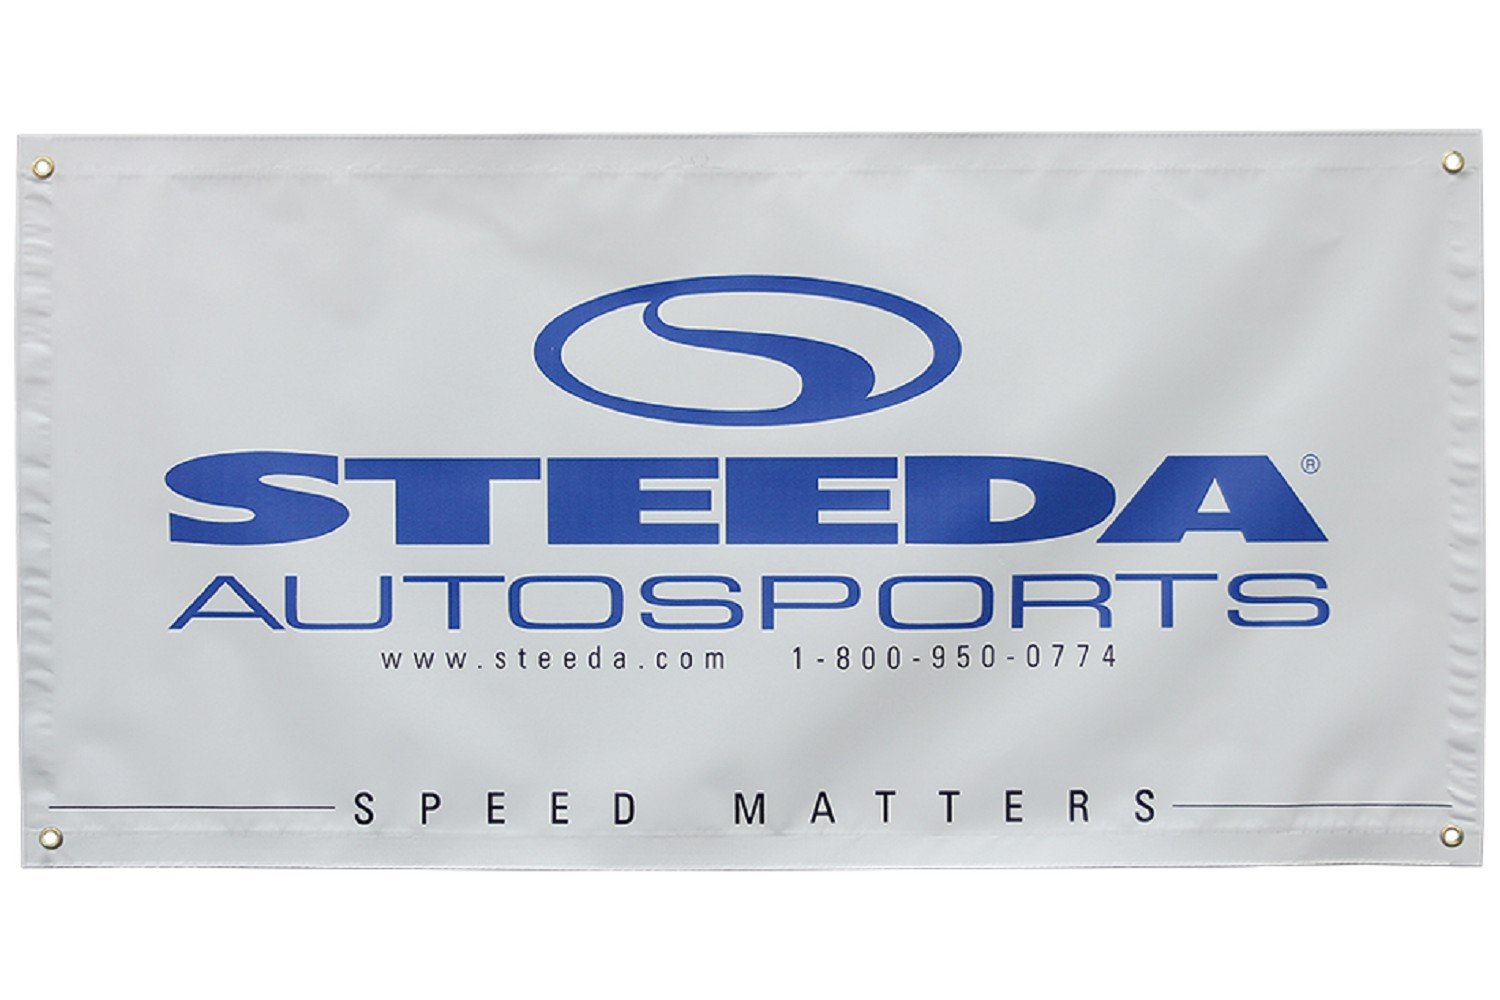 Steeda Autosports Workshop Banner